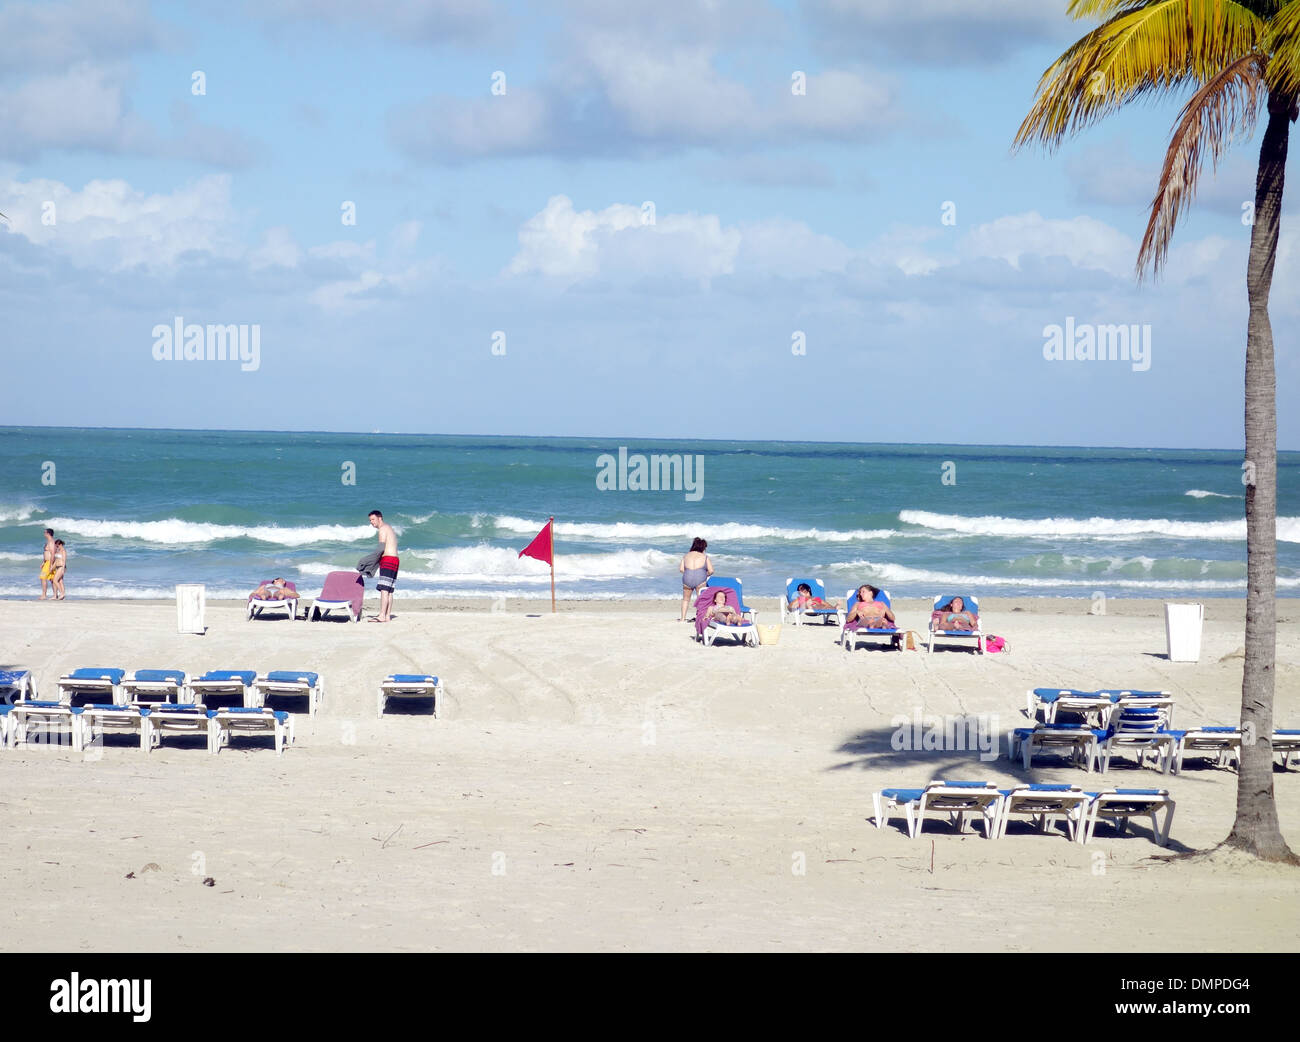 Beach in Varadero, Cuba Stock Photo